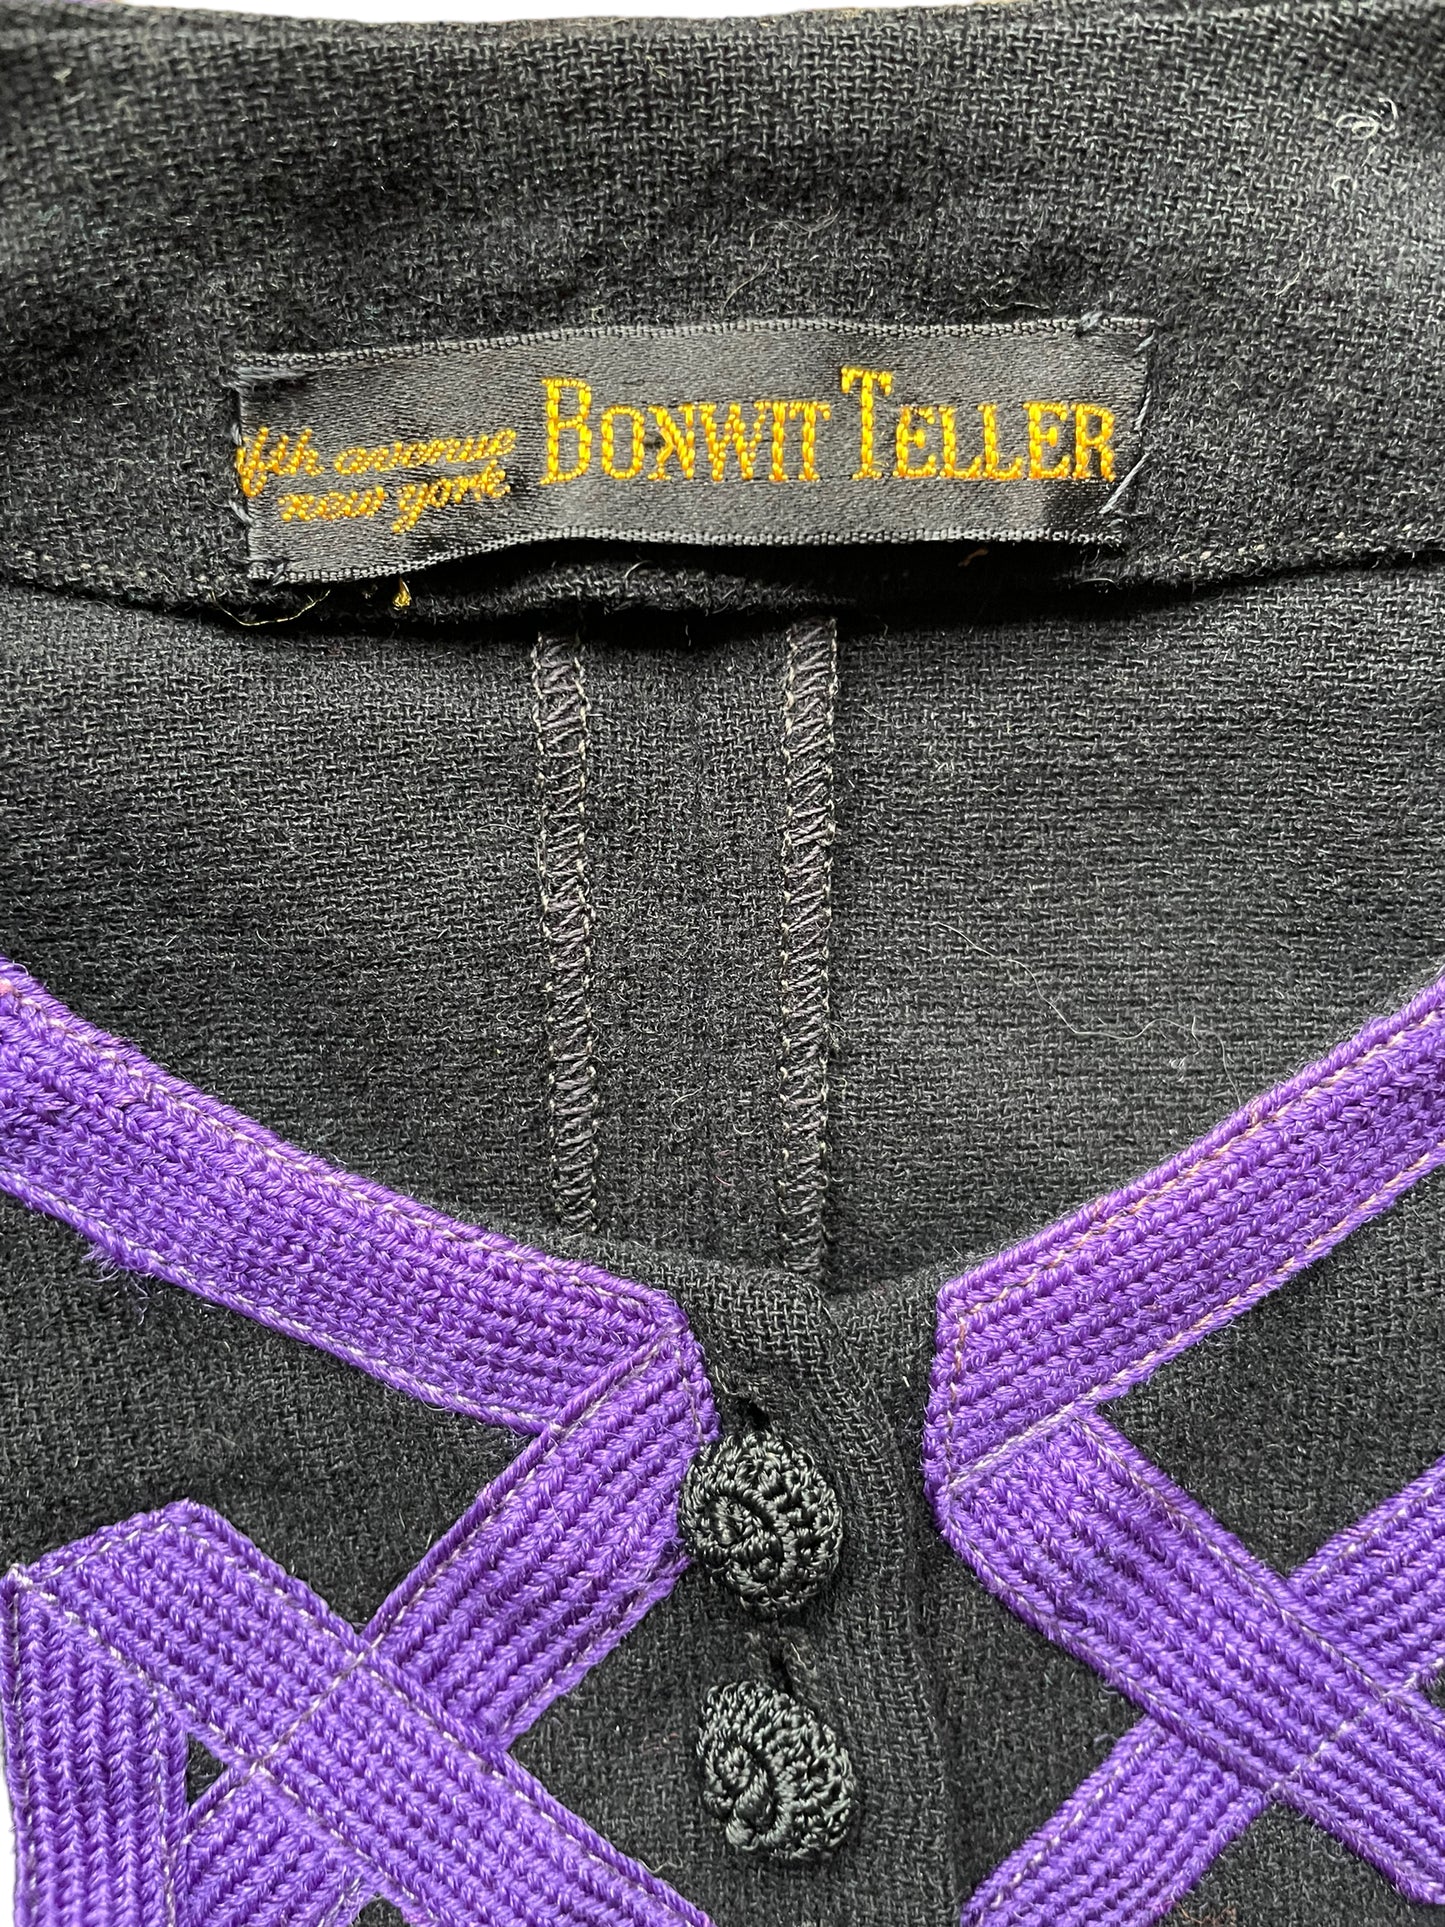 Vintage 1940s Bonwit Teller Wool Jacket | Seattle Ladies Vintage | Barn Owl Vintage Seattle